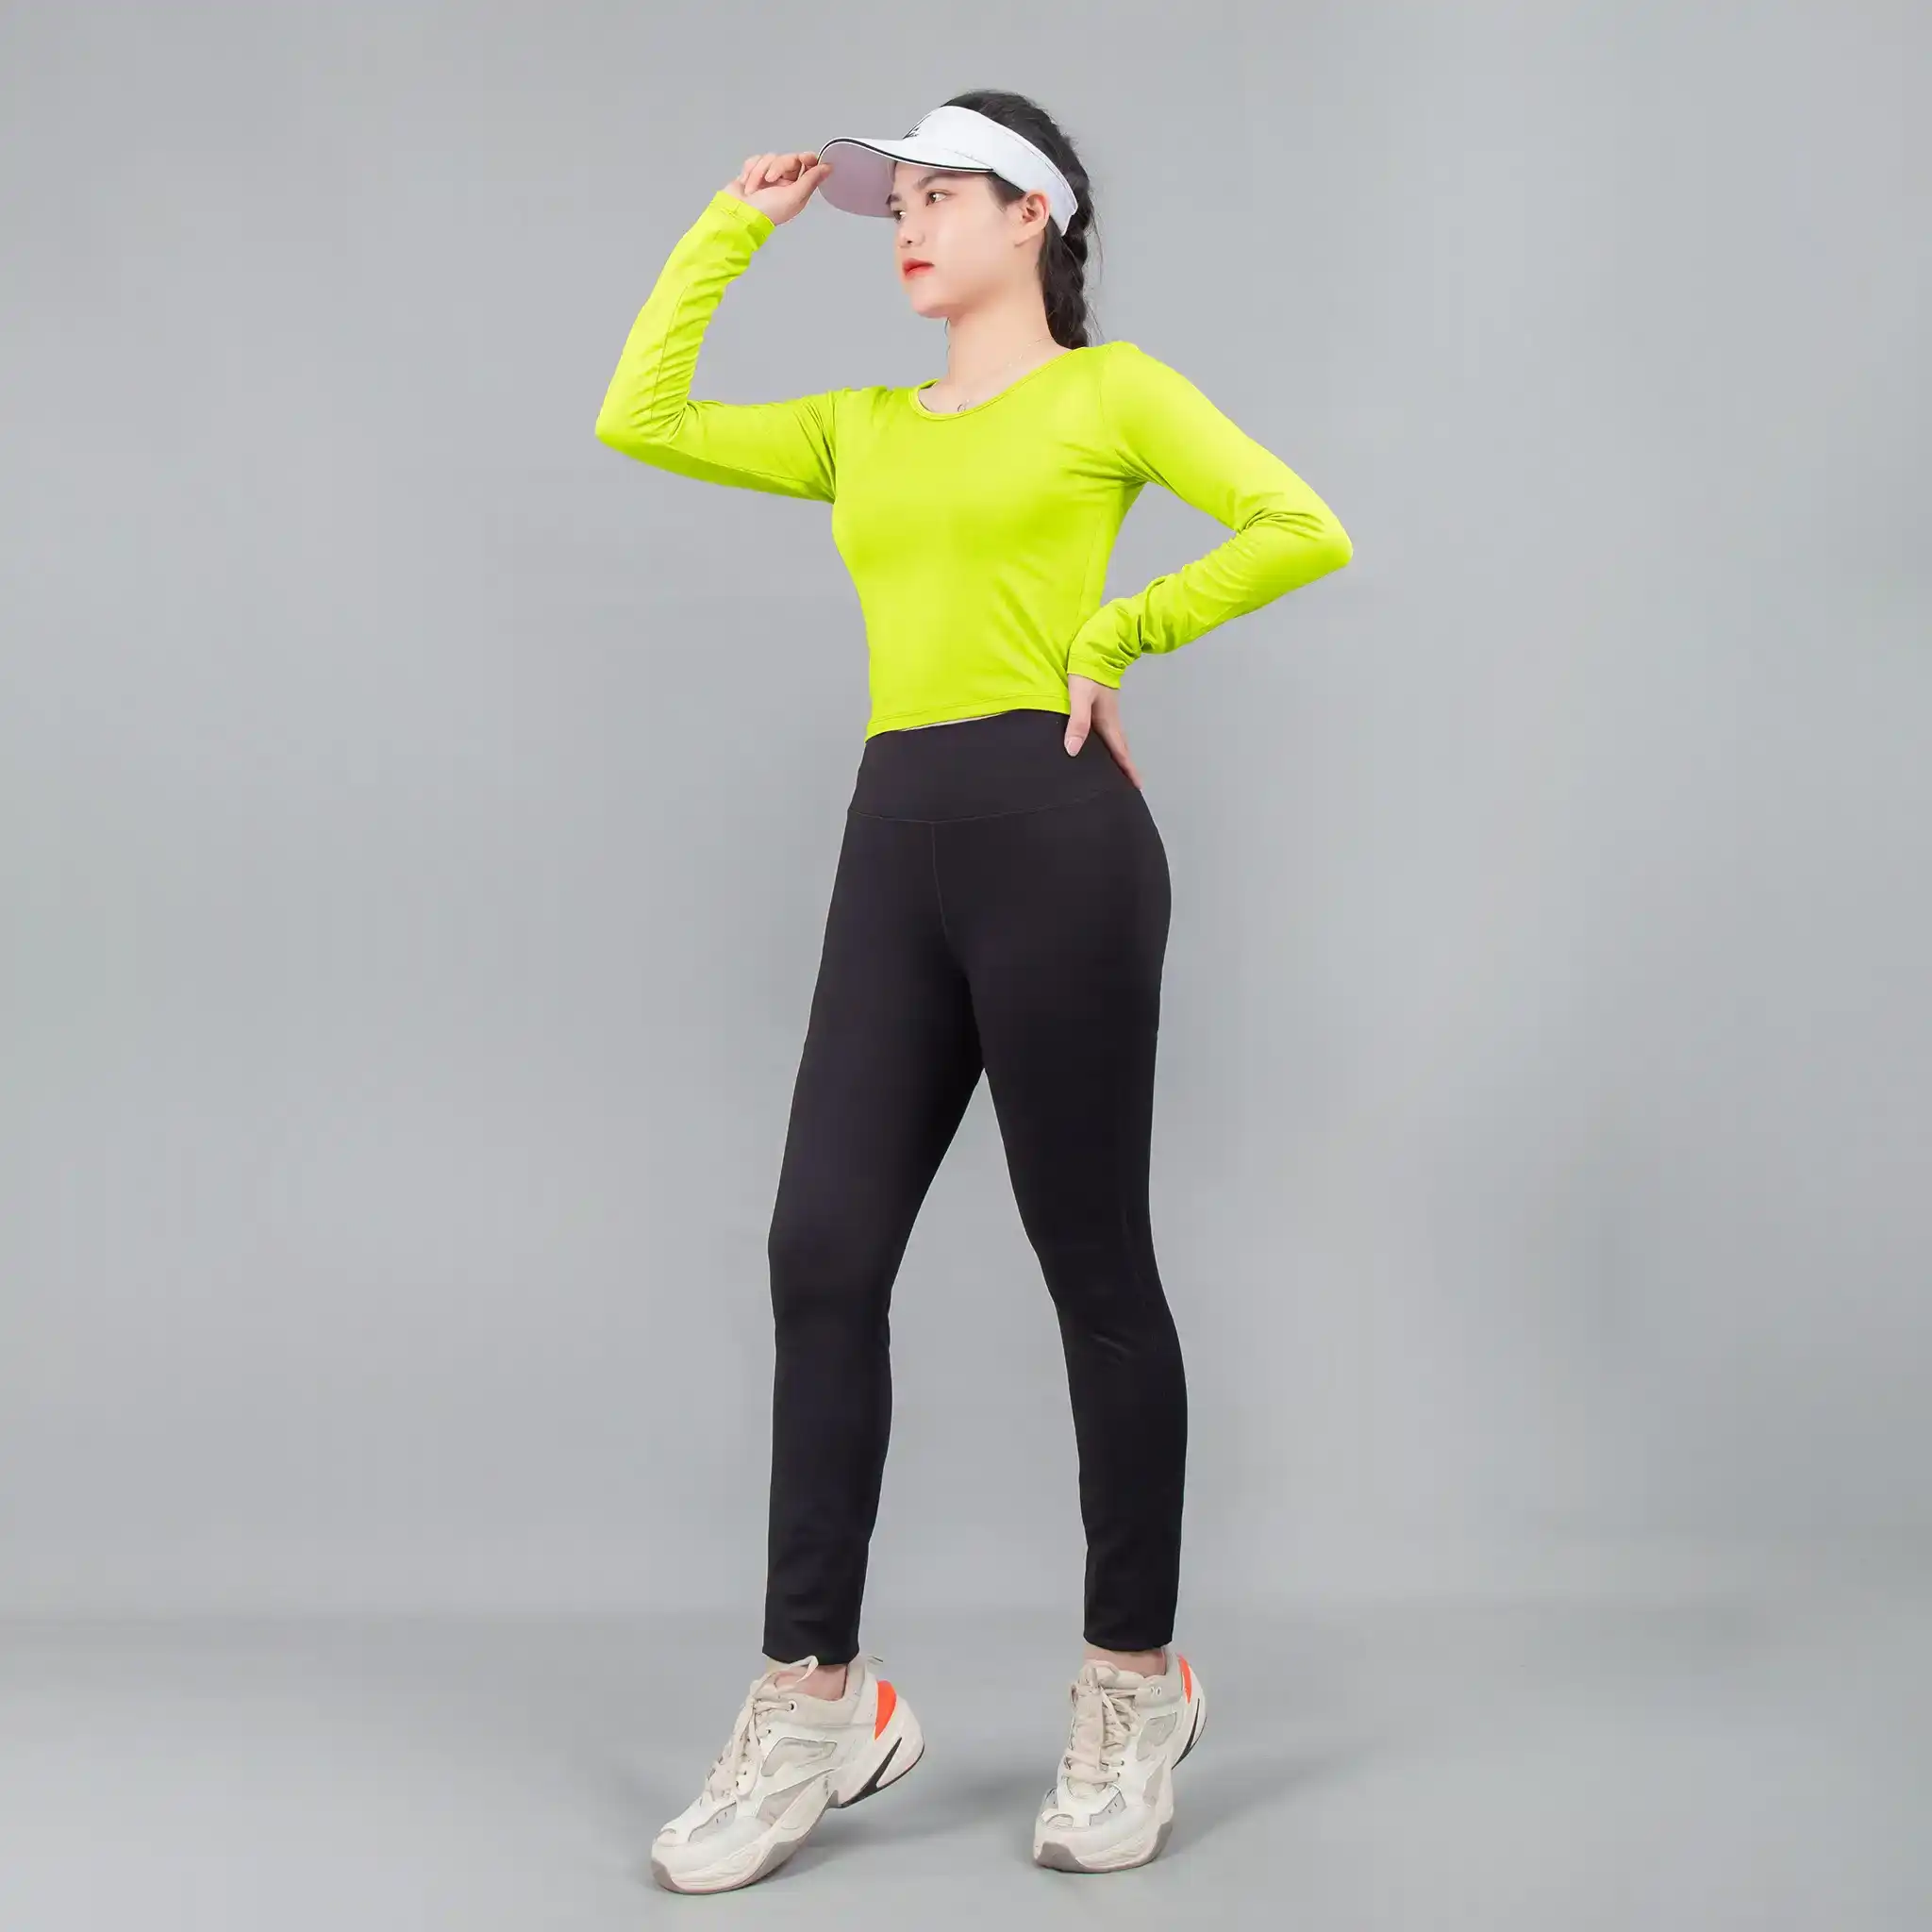  Bộ đồ thể thao Gladimax quần Genmax V3 & Croptop dài tay phù hợp Yoga, gym, đạp xe, dance 